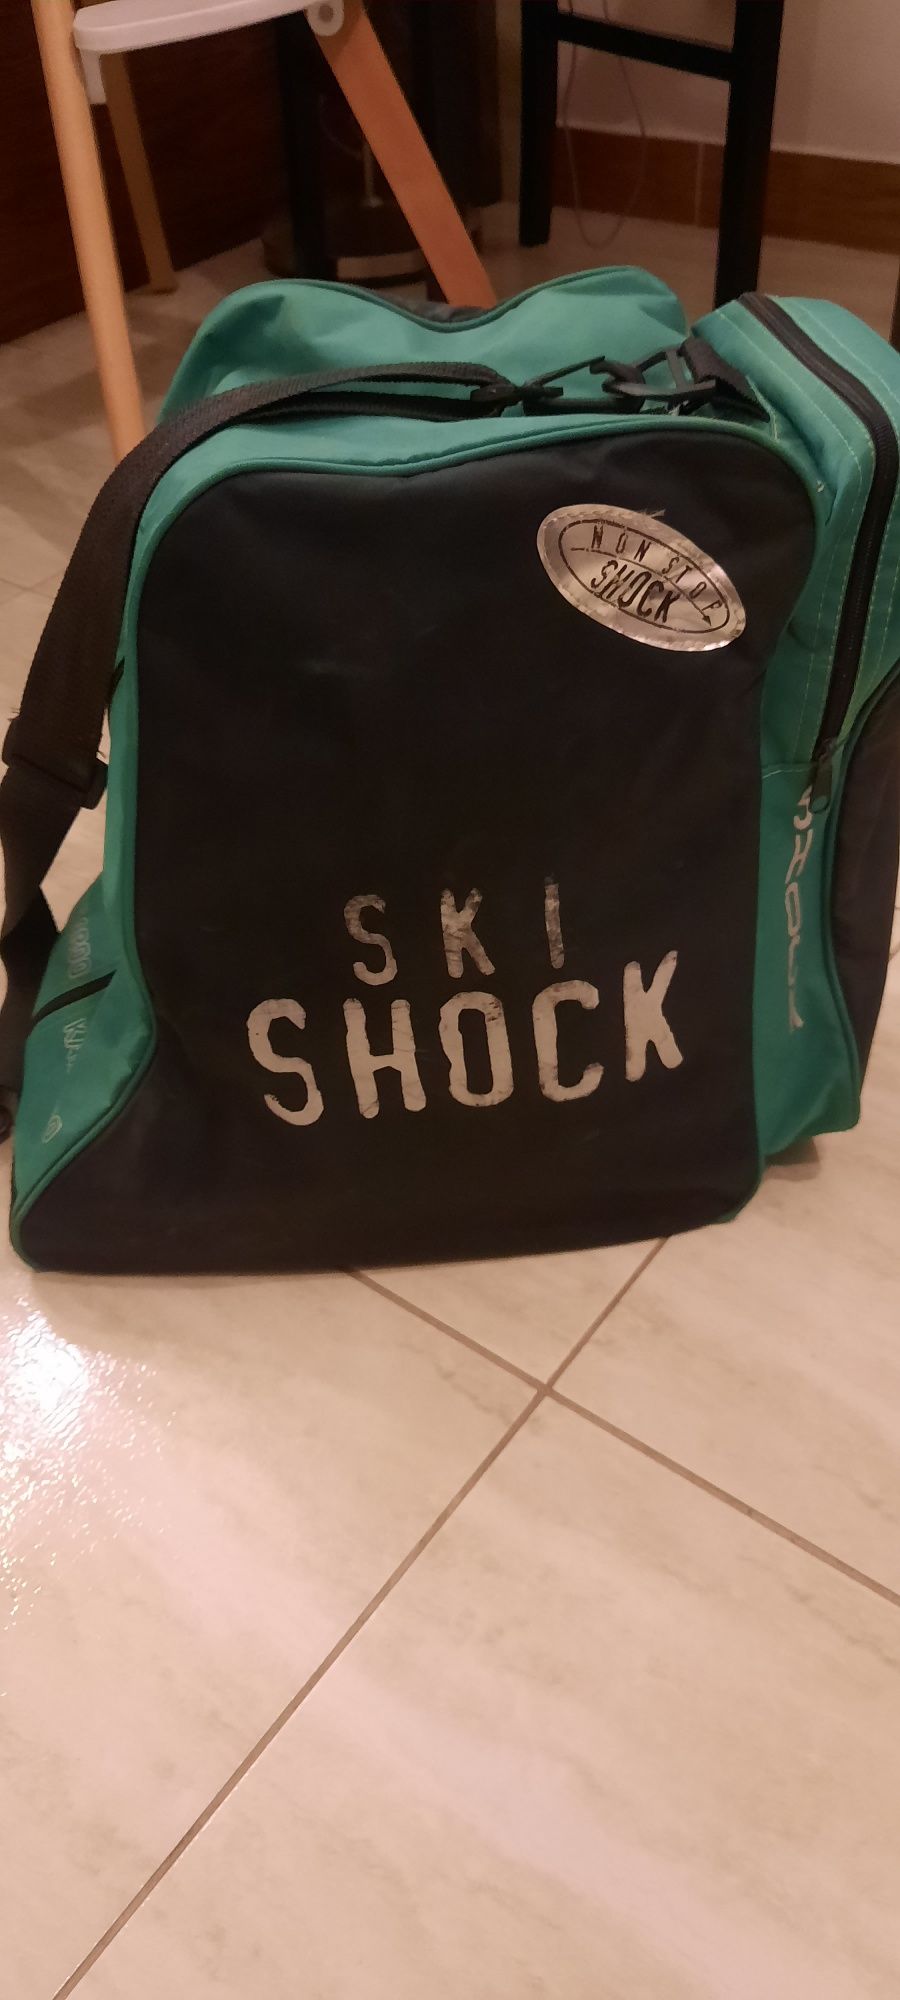 Buty narciarskie wraz z torbą